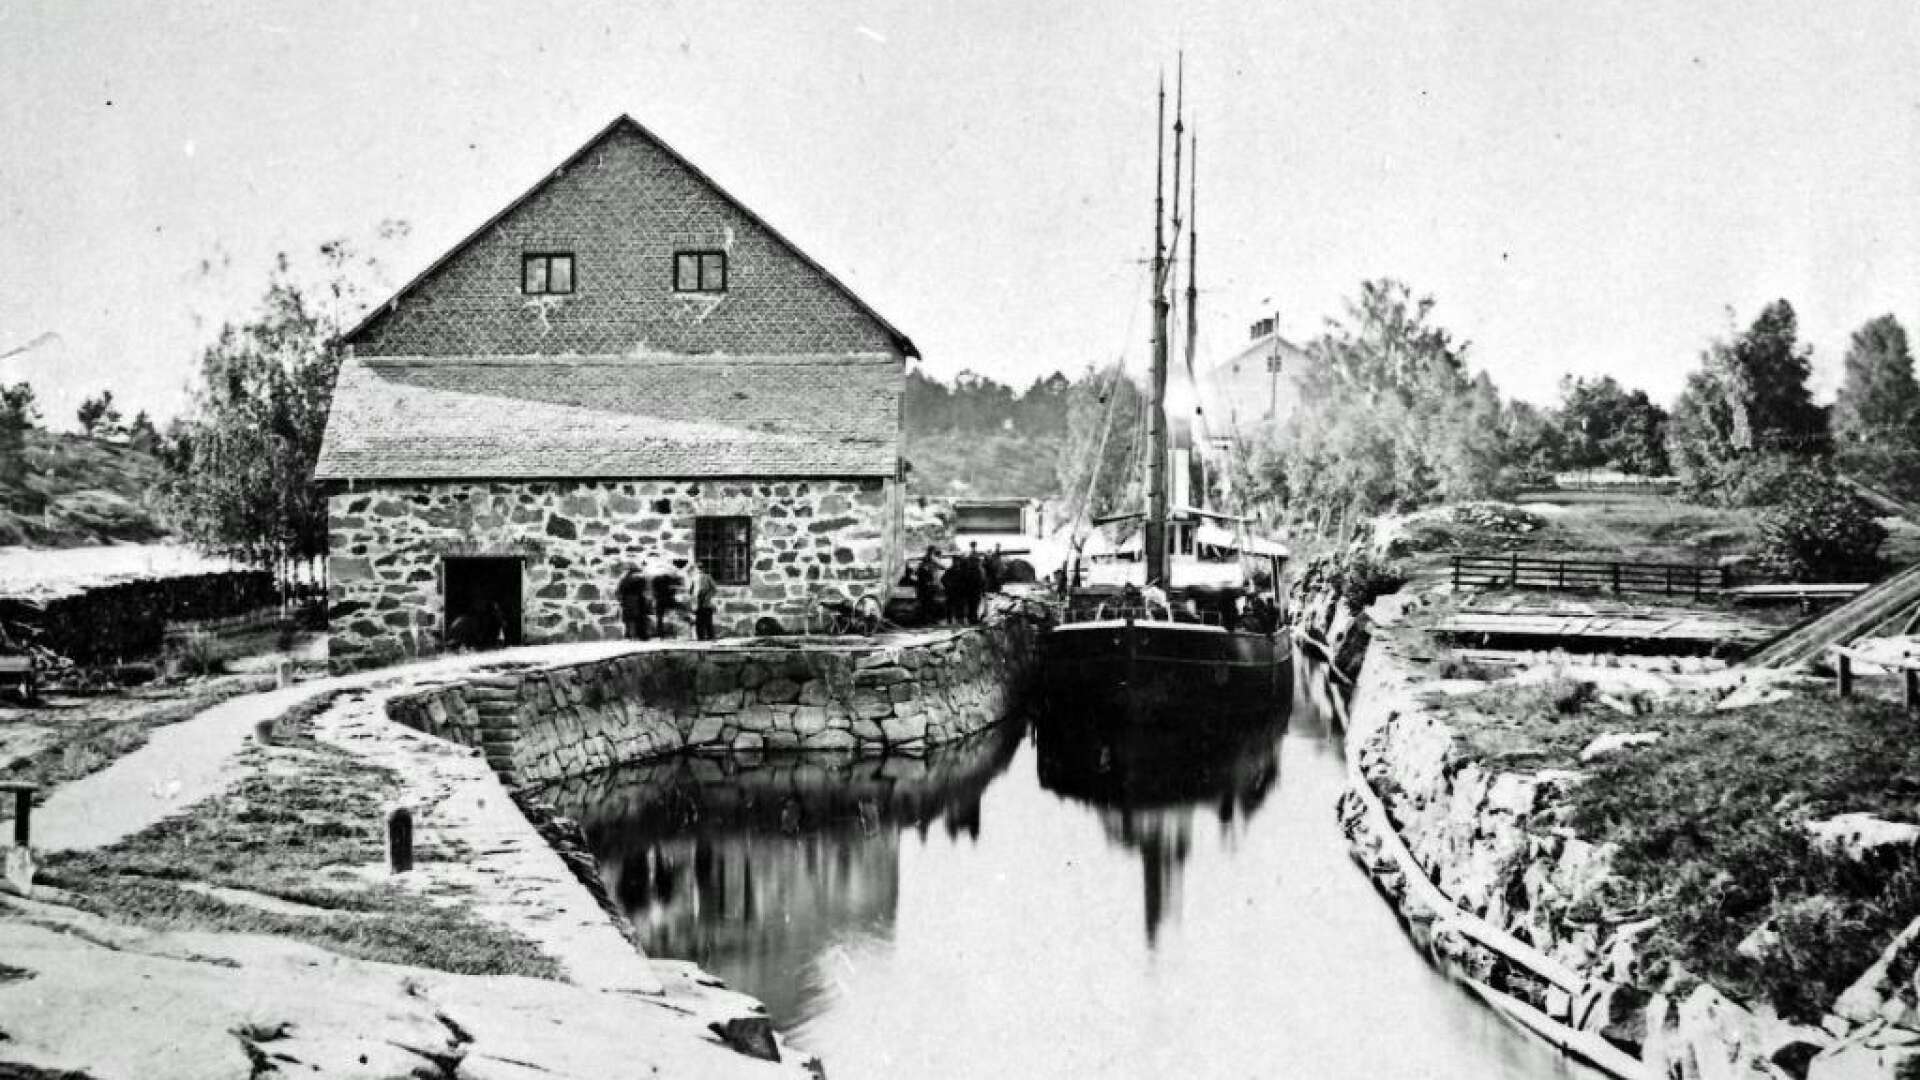 En mycket tidig bild på kanalen och Stenmagasinet. Kanalvillan är byggd, men det är inte det magasin som senare låg på kanalens västra sida. Bilden måste således vara tagen någon gång under andra hälften av 1800-talet, kanske samtidigt som bilden med damen som bär krinolin togs.